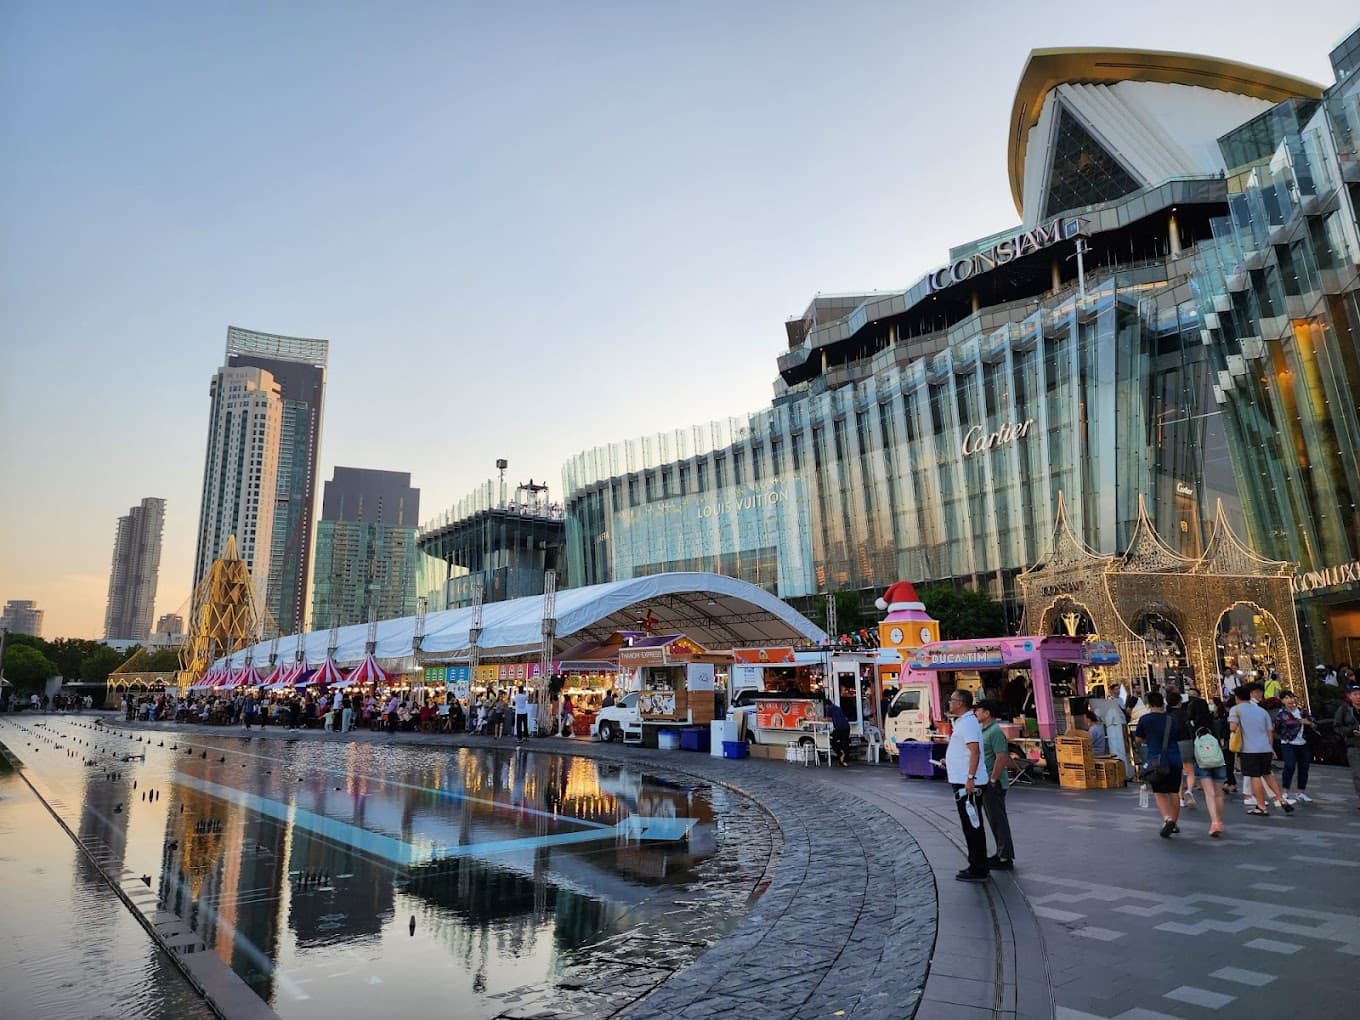 Bangkok shopping malls